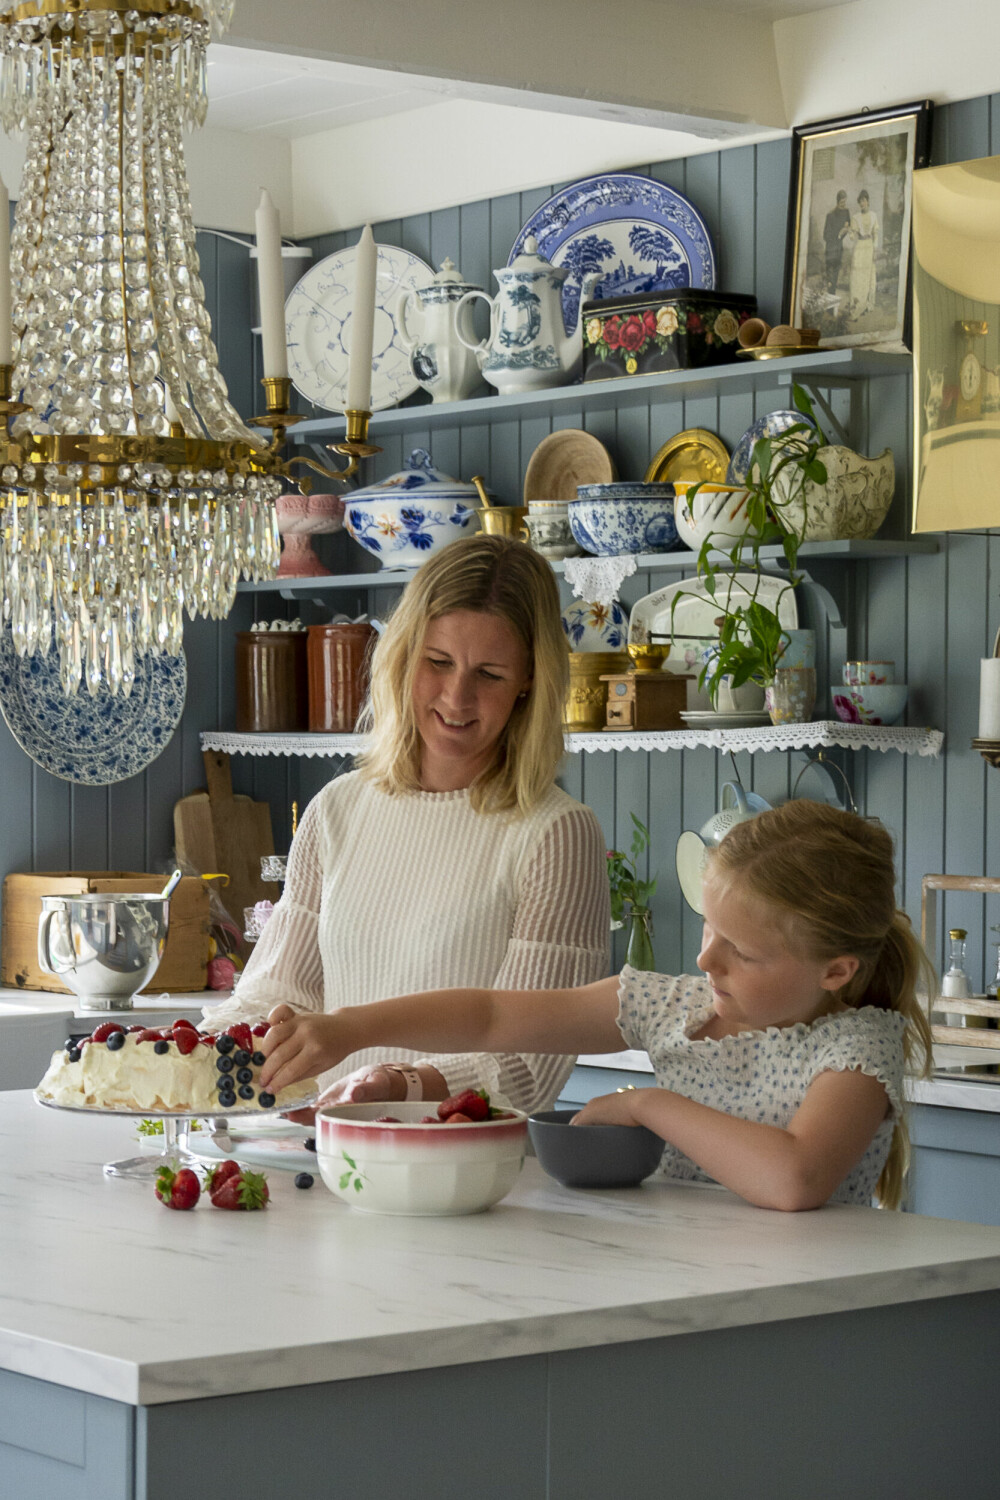 KJØKKEN: Camilla og Victoria pynter pavlovaen som mamma har bakt. Kjøkkenet er blitt et fint sted der flere kan jobbe sammen.